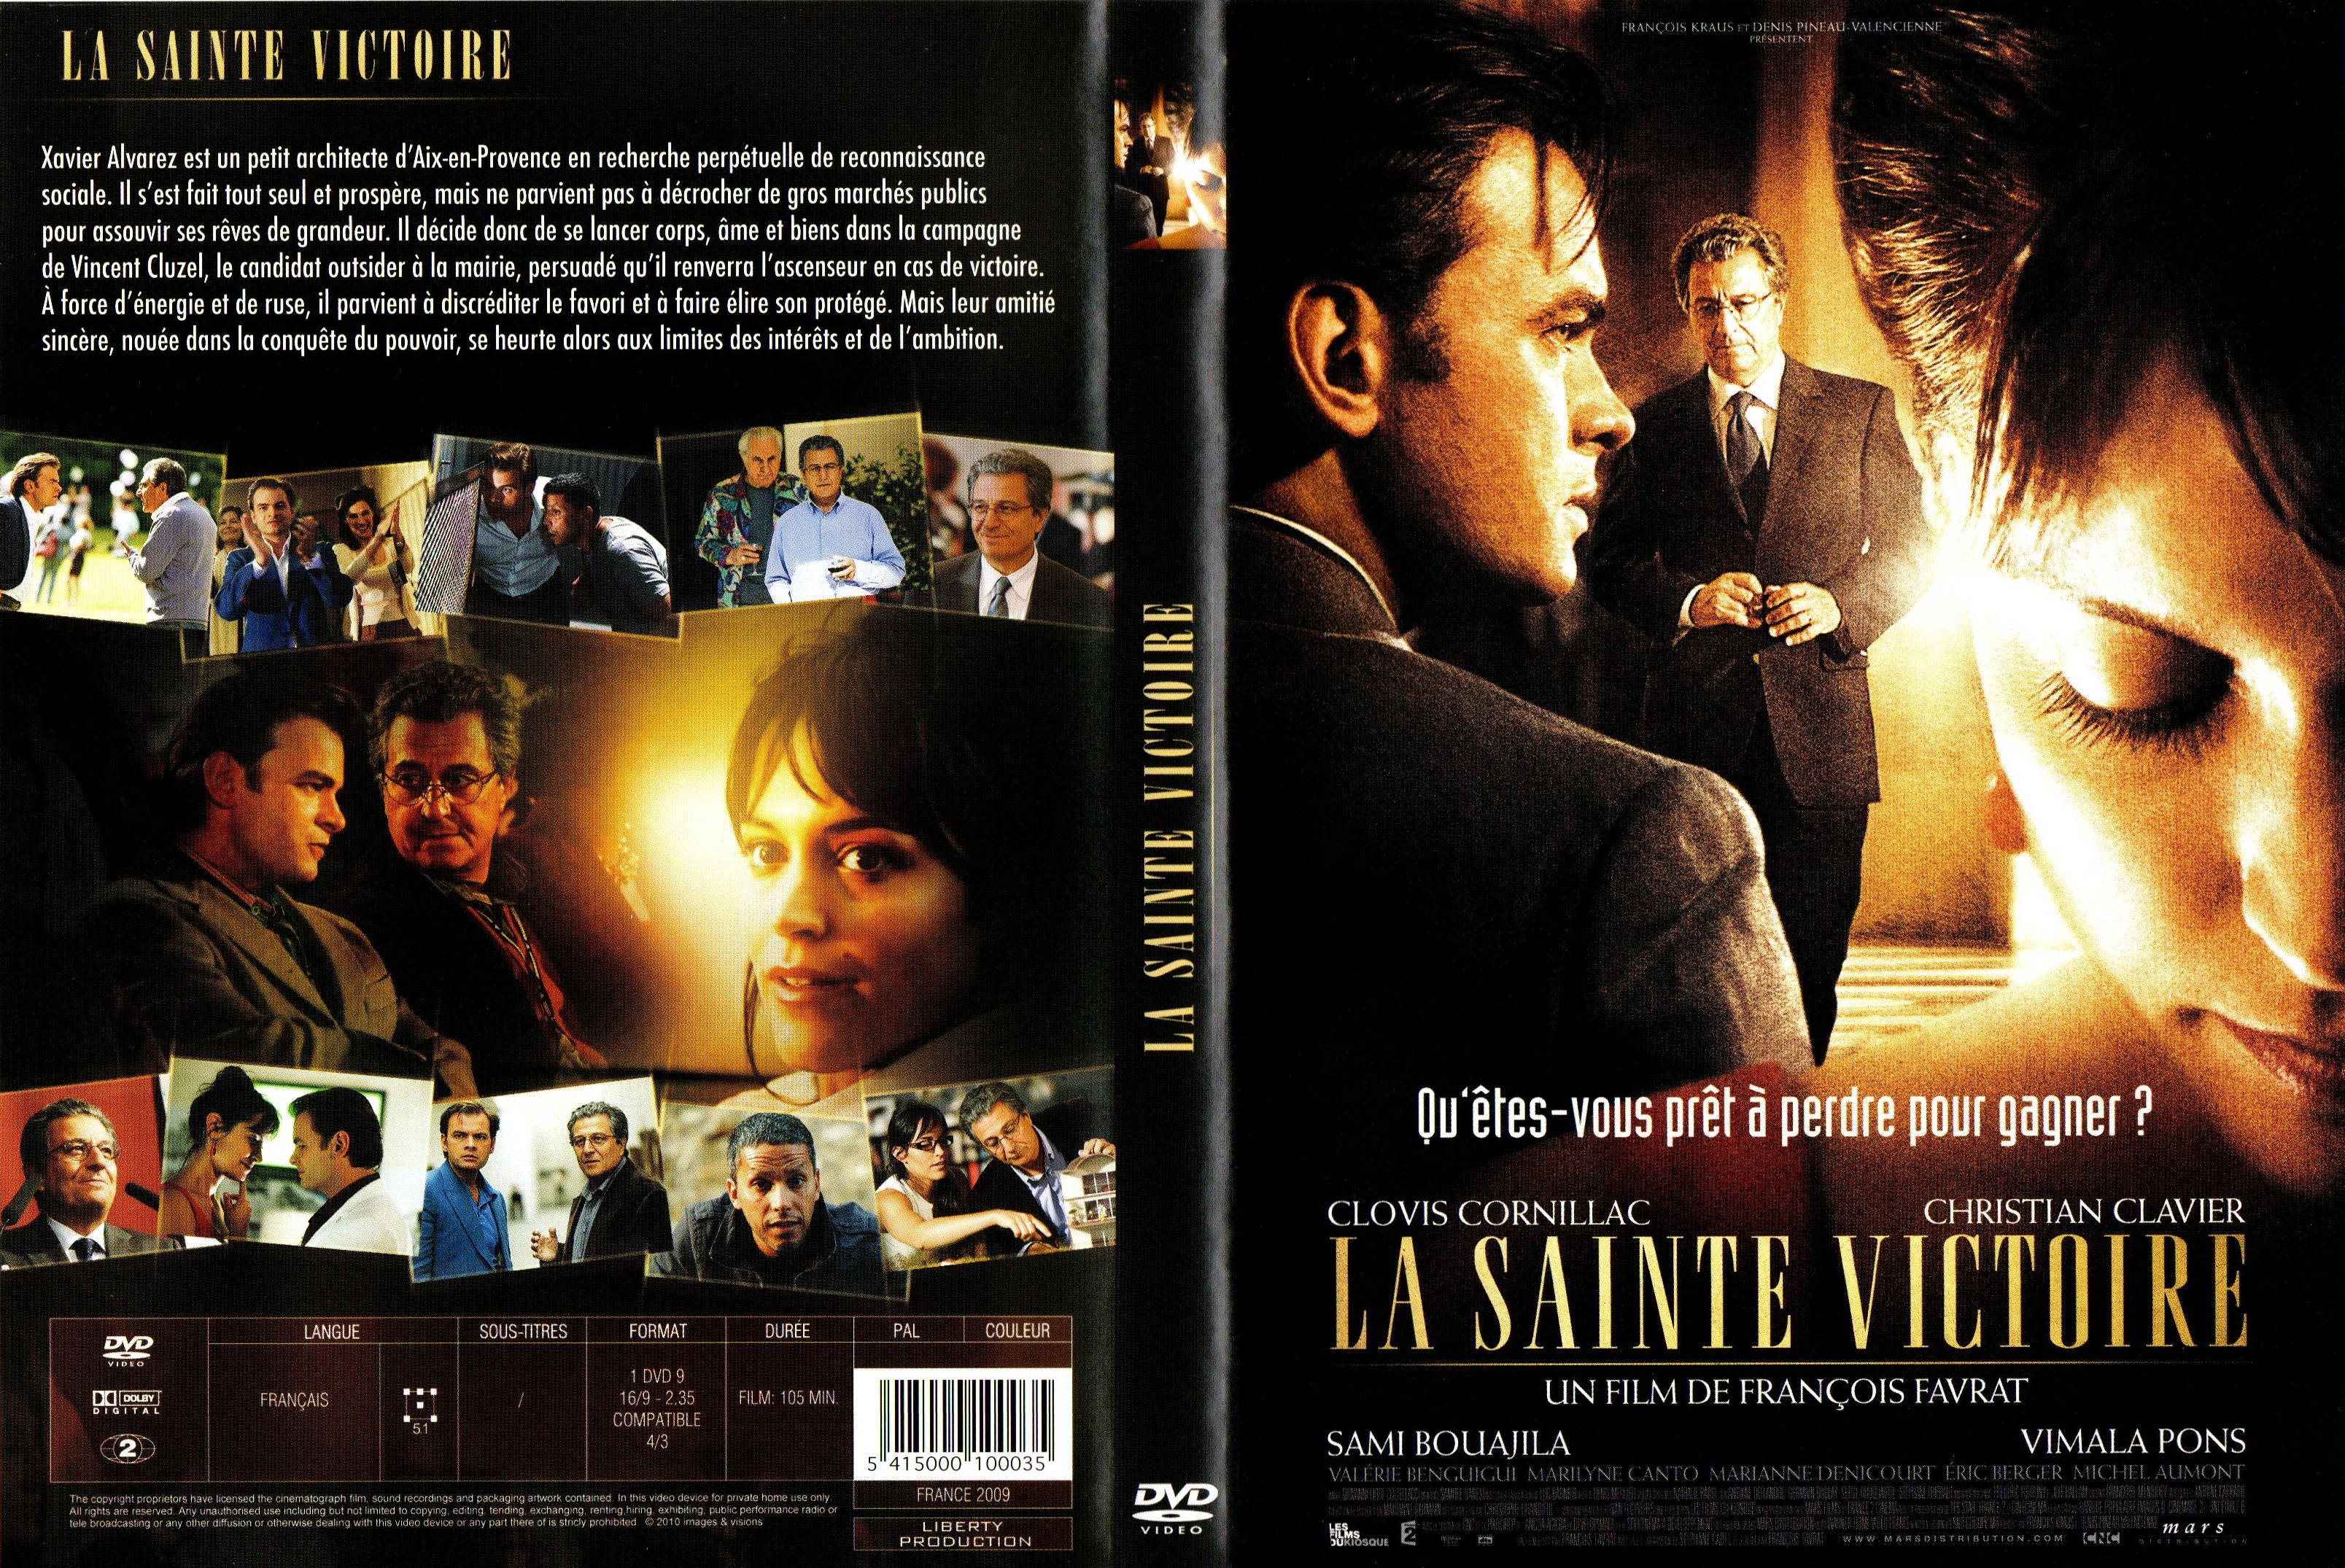 Jaquette DVD La sainte victoire v2